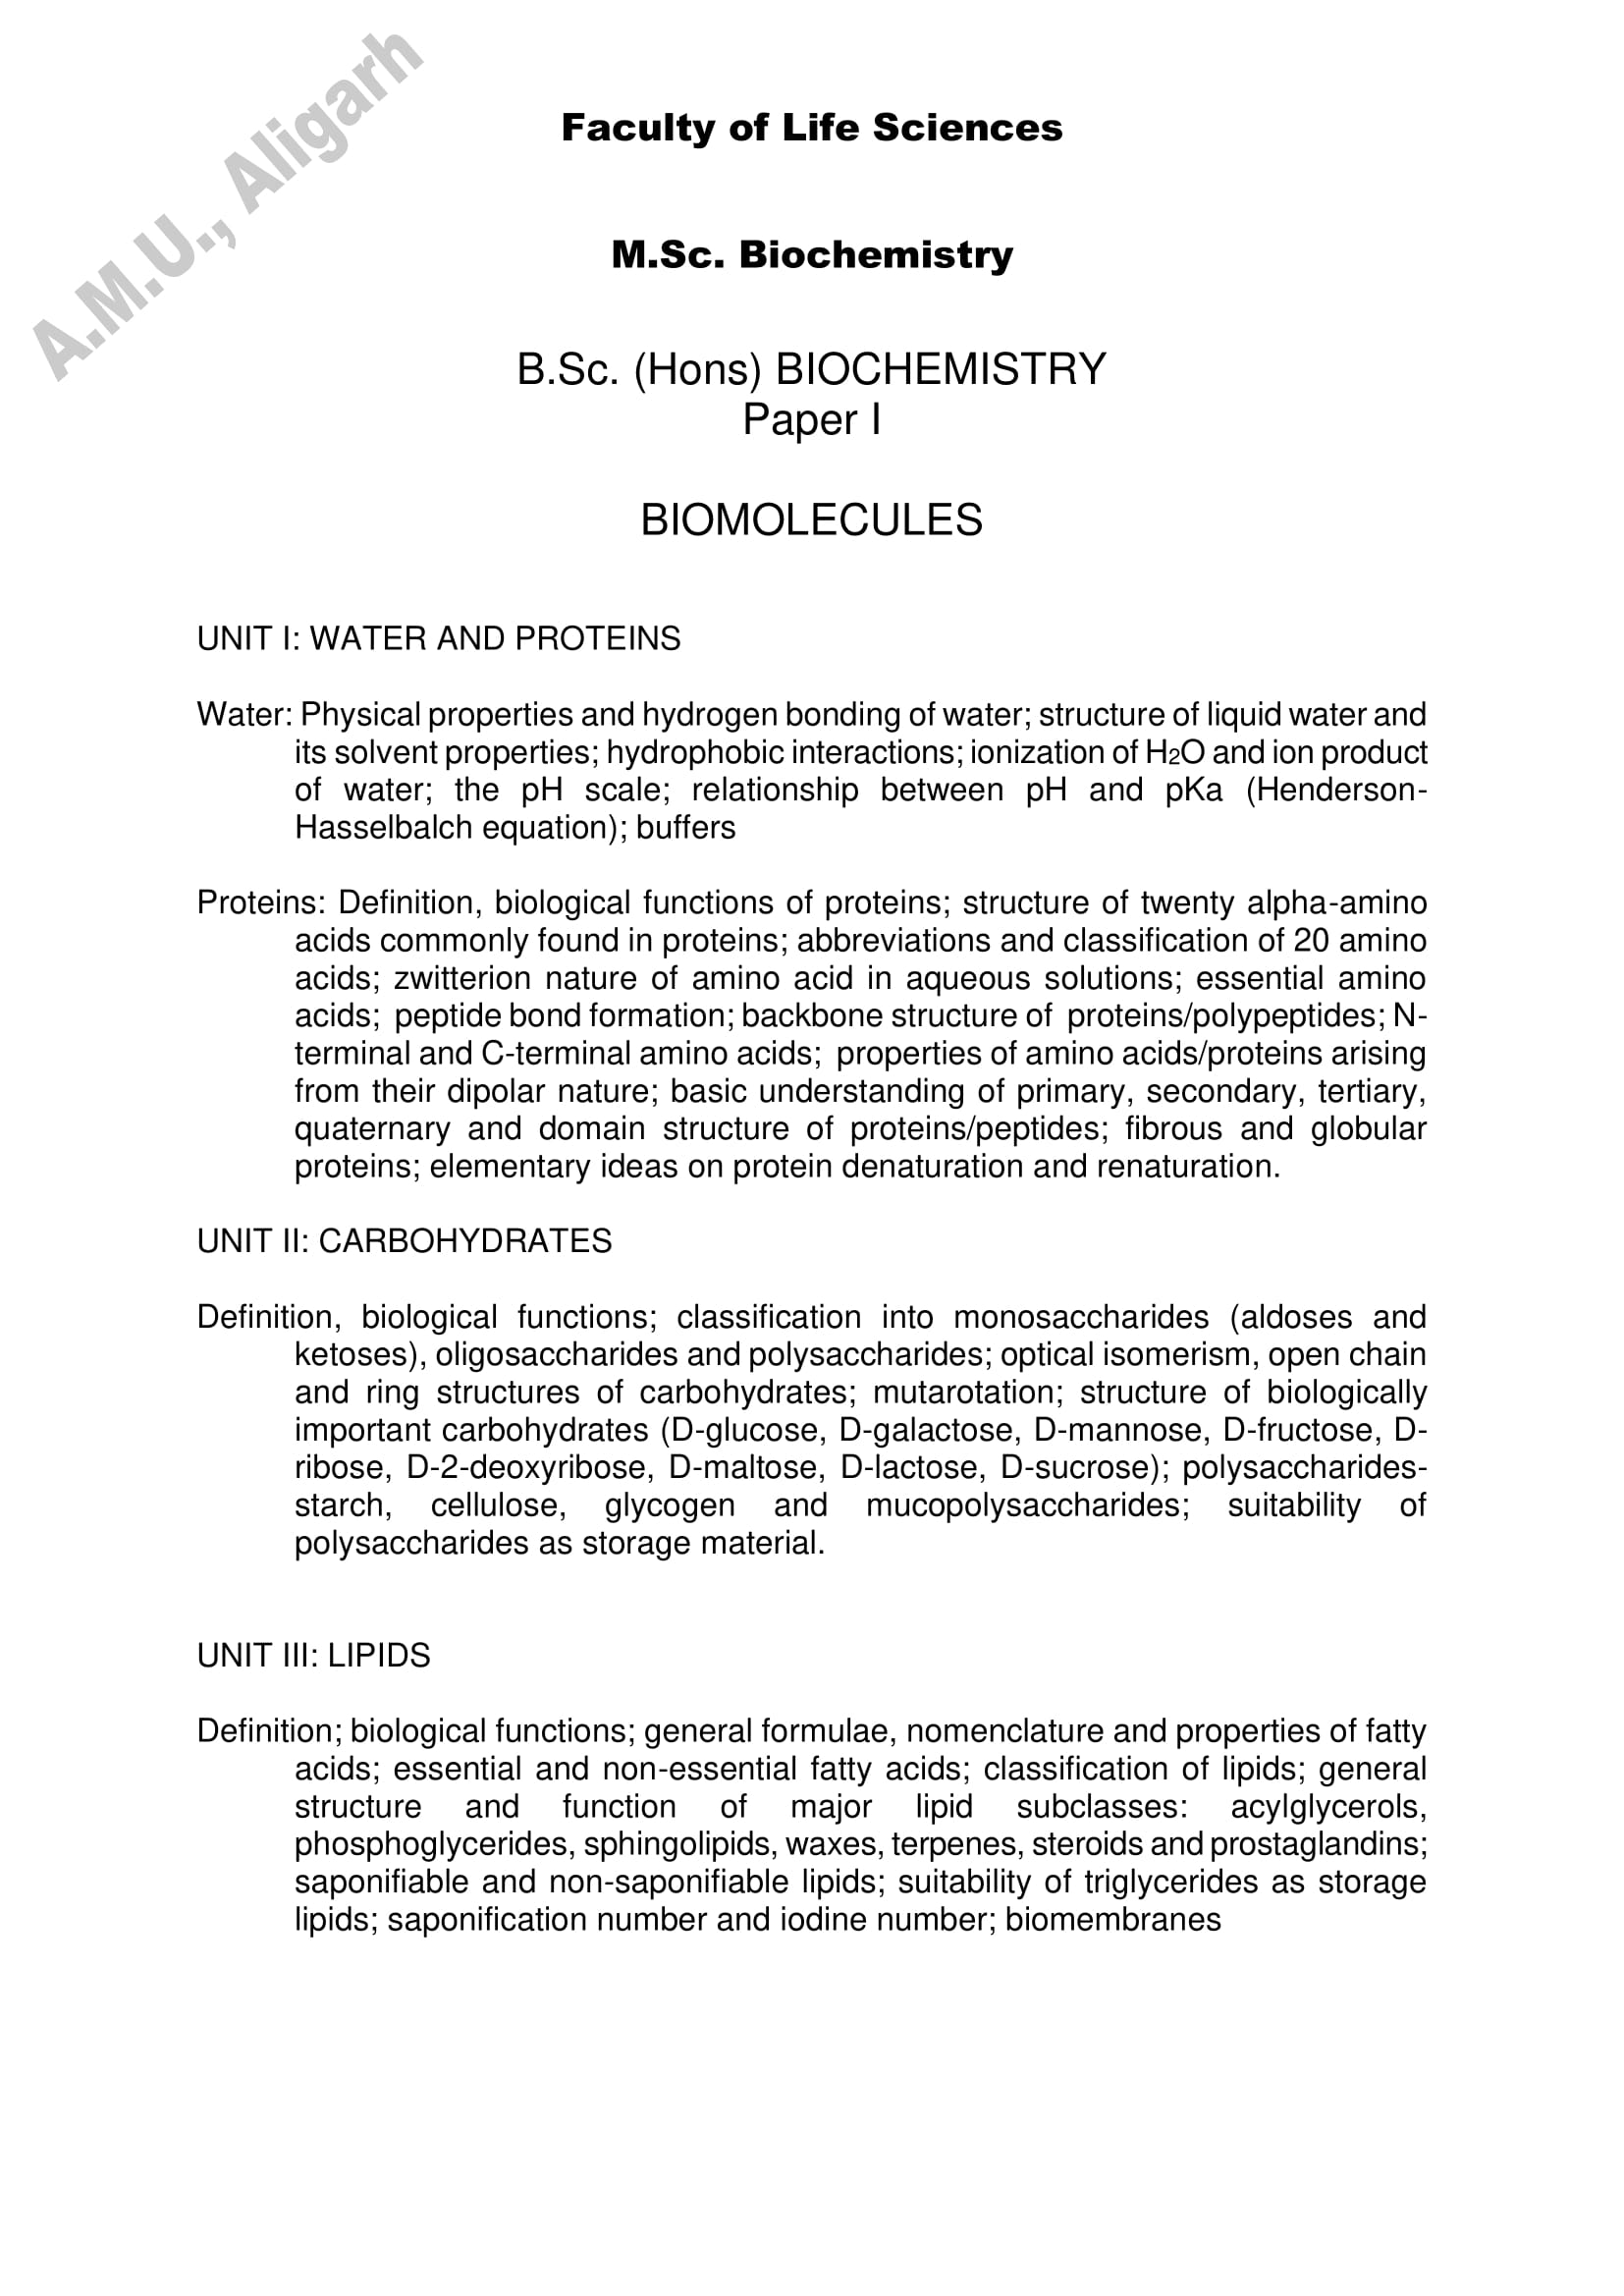 AMU Entrance Exam Syllabus for M.Sc. in Biochemistry - Page 1